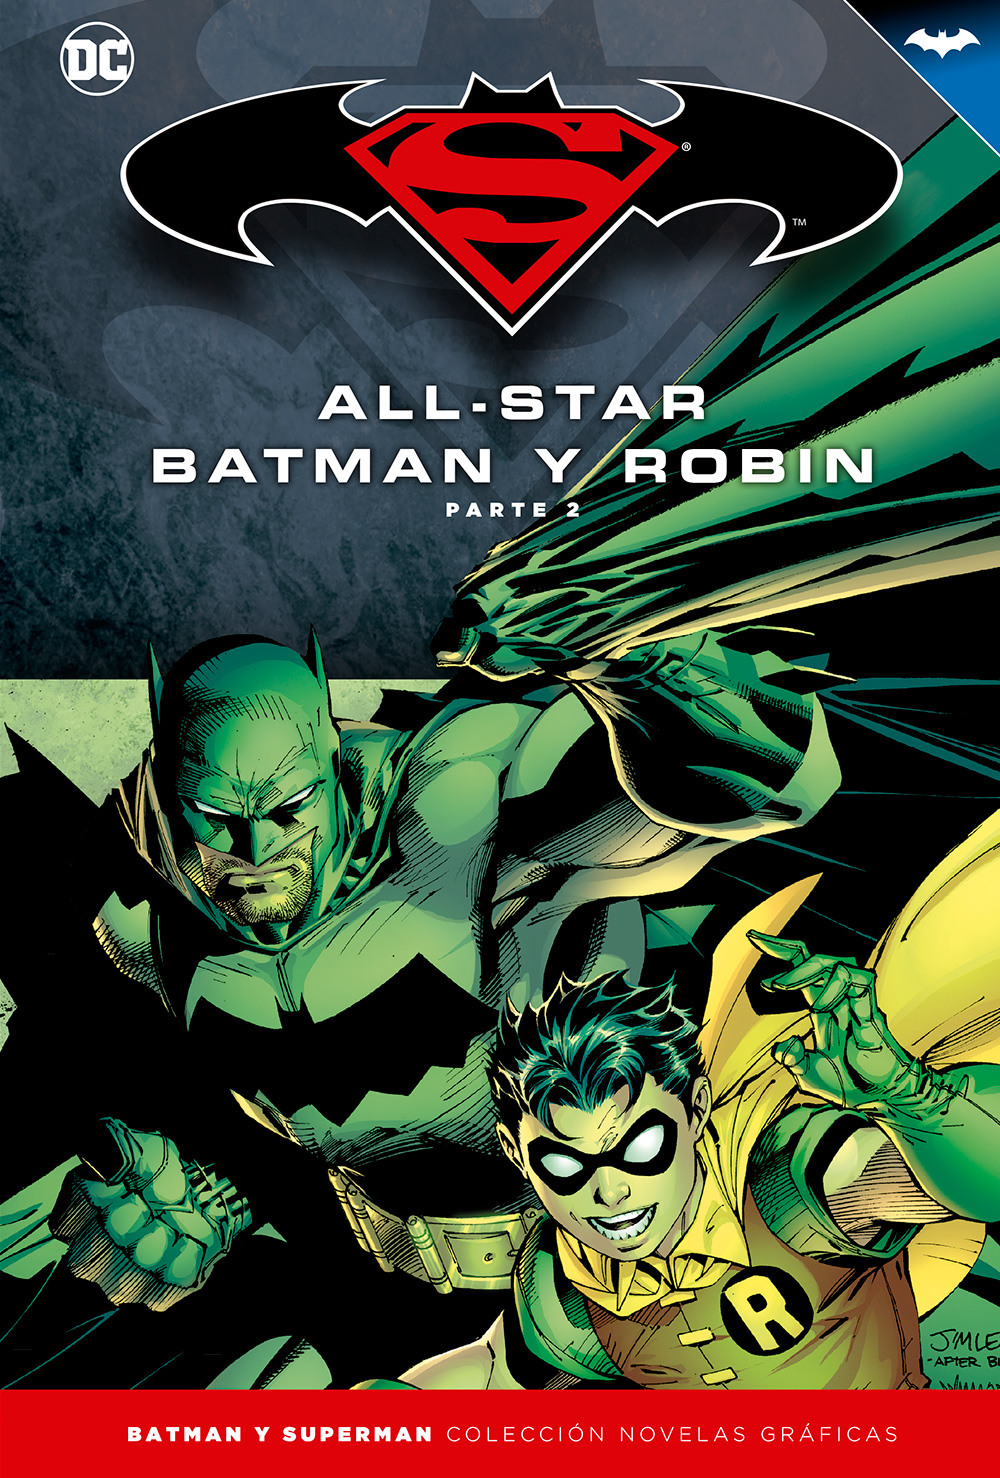 22-25 - [DC - Salvat] Batman y Superman: Colección Novelas Gráficas - Página 3 Portada_BMSM_3_AllStarBatman2